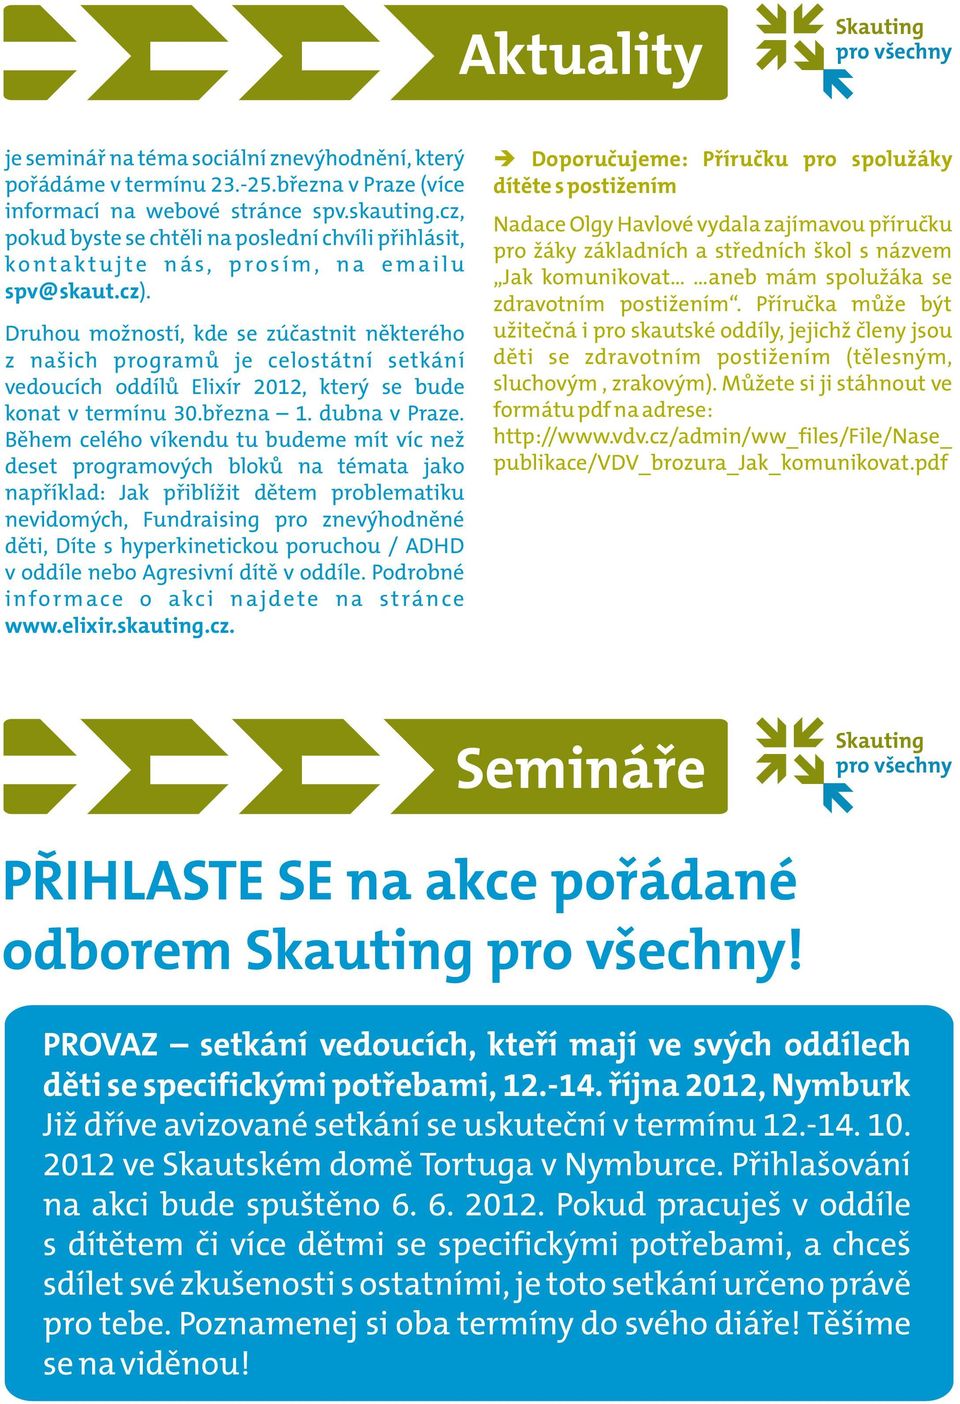 Druhou možností, kde se zúčastnit některého z našich programů je celostátní setkání vedoucích oddílů Elixír 2012, který se bude konat v termínu 30.března 1. dubna v Praze.